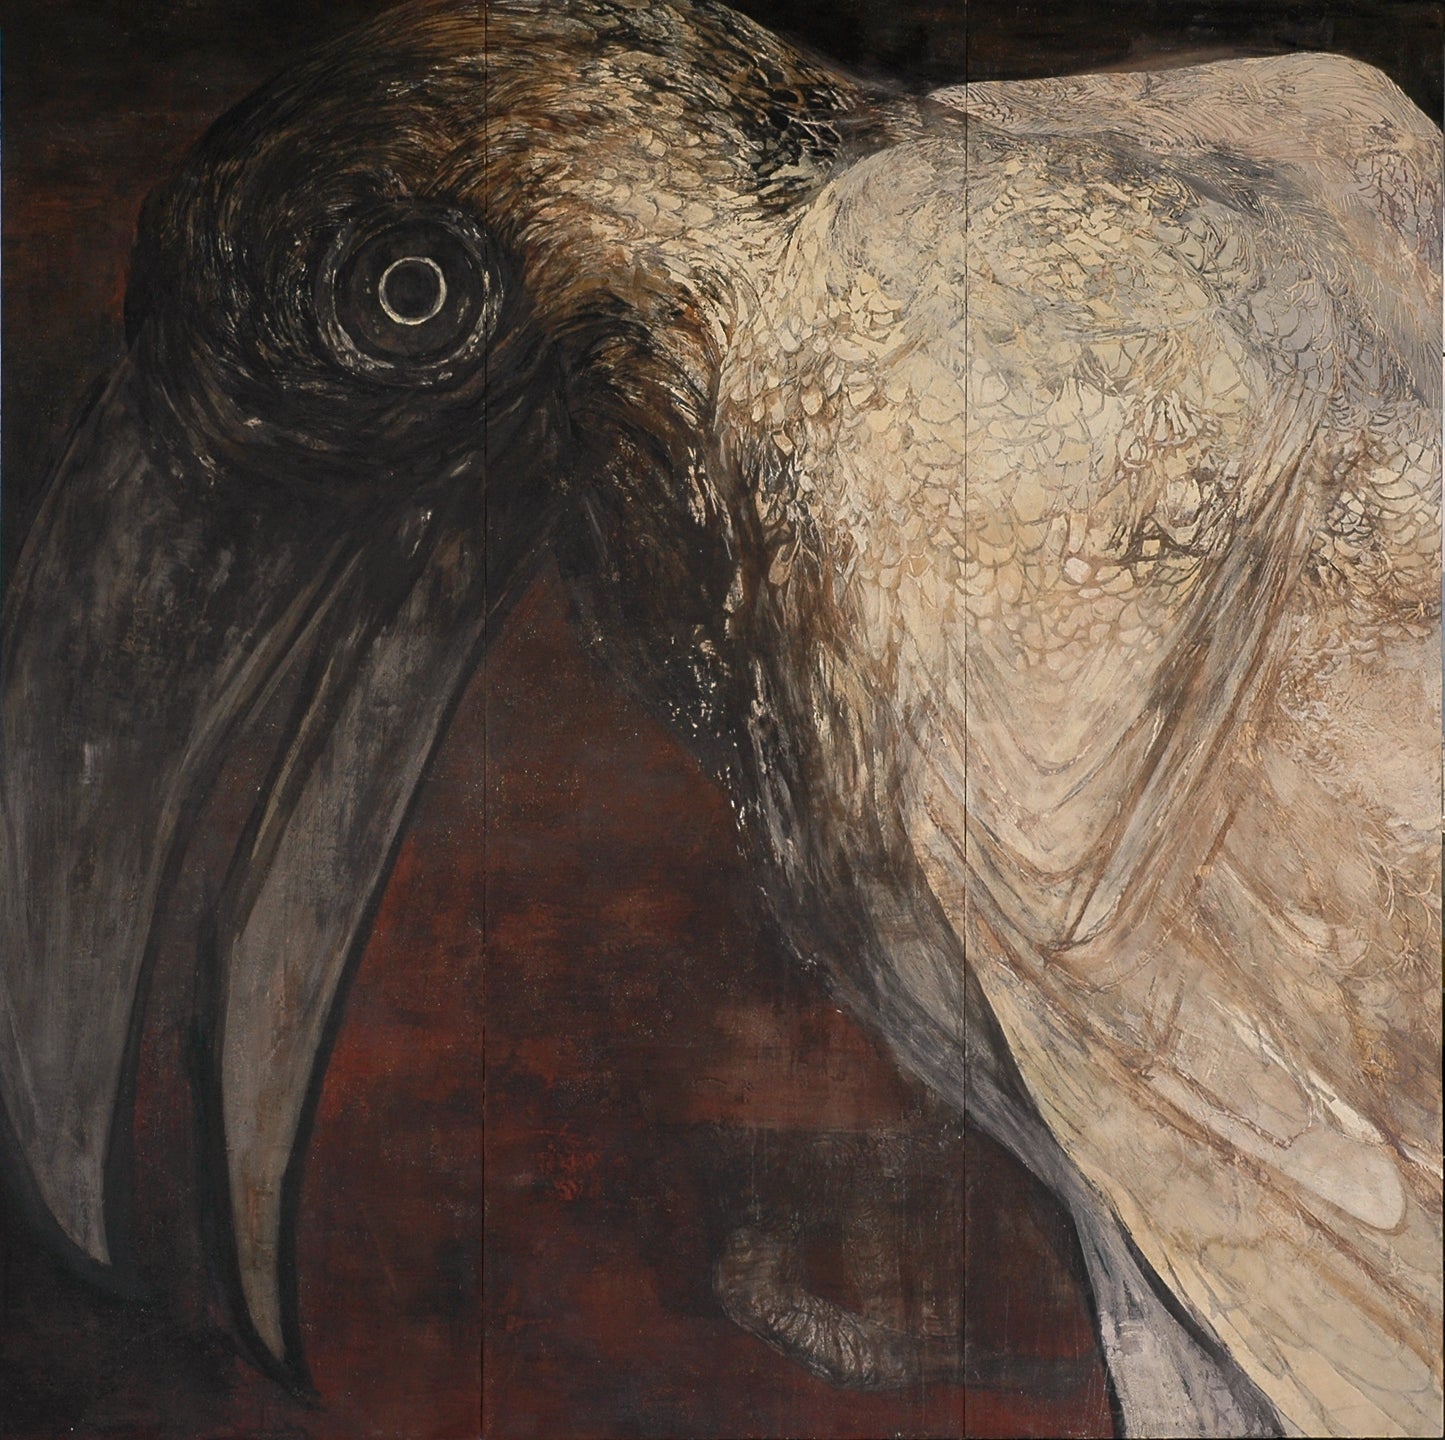 嘴 "beak", 2009